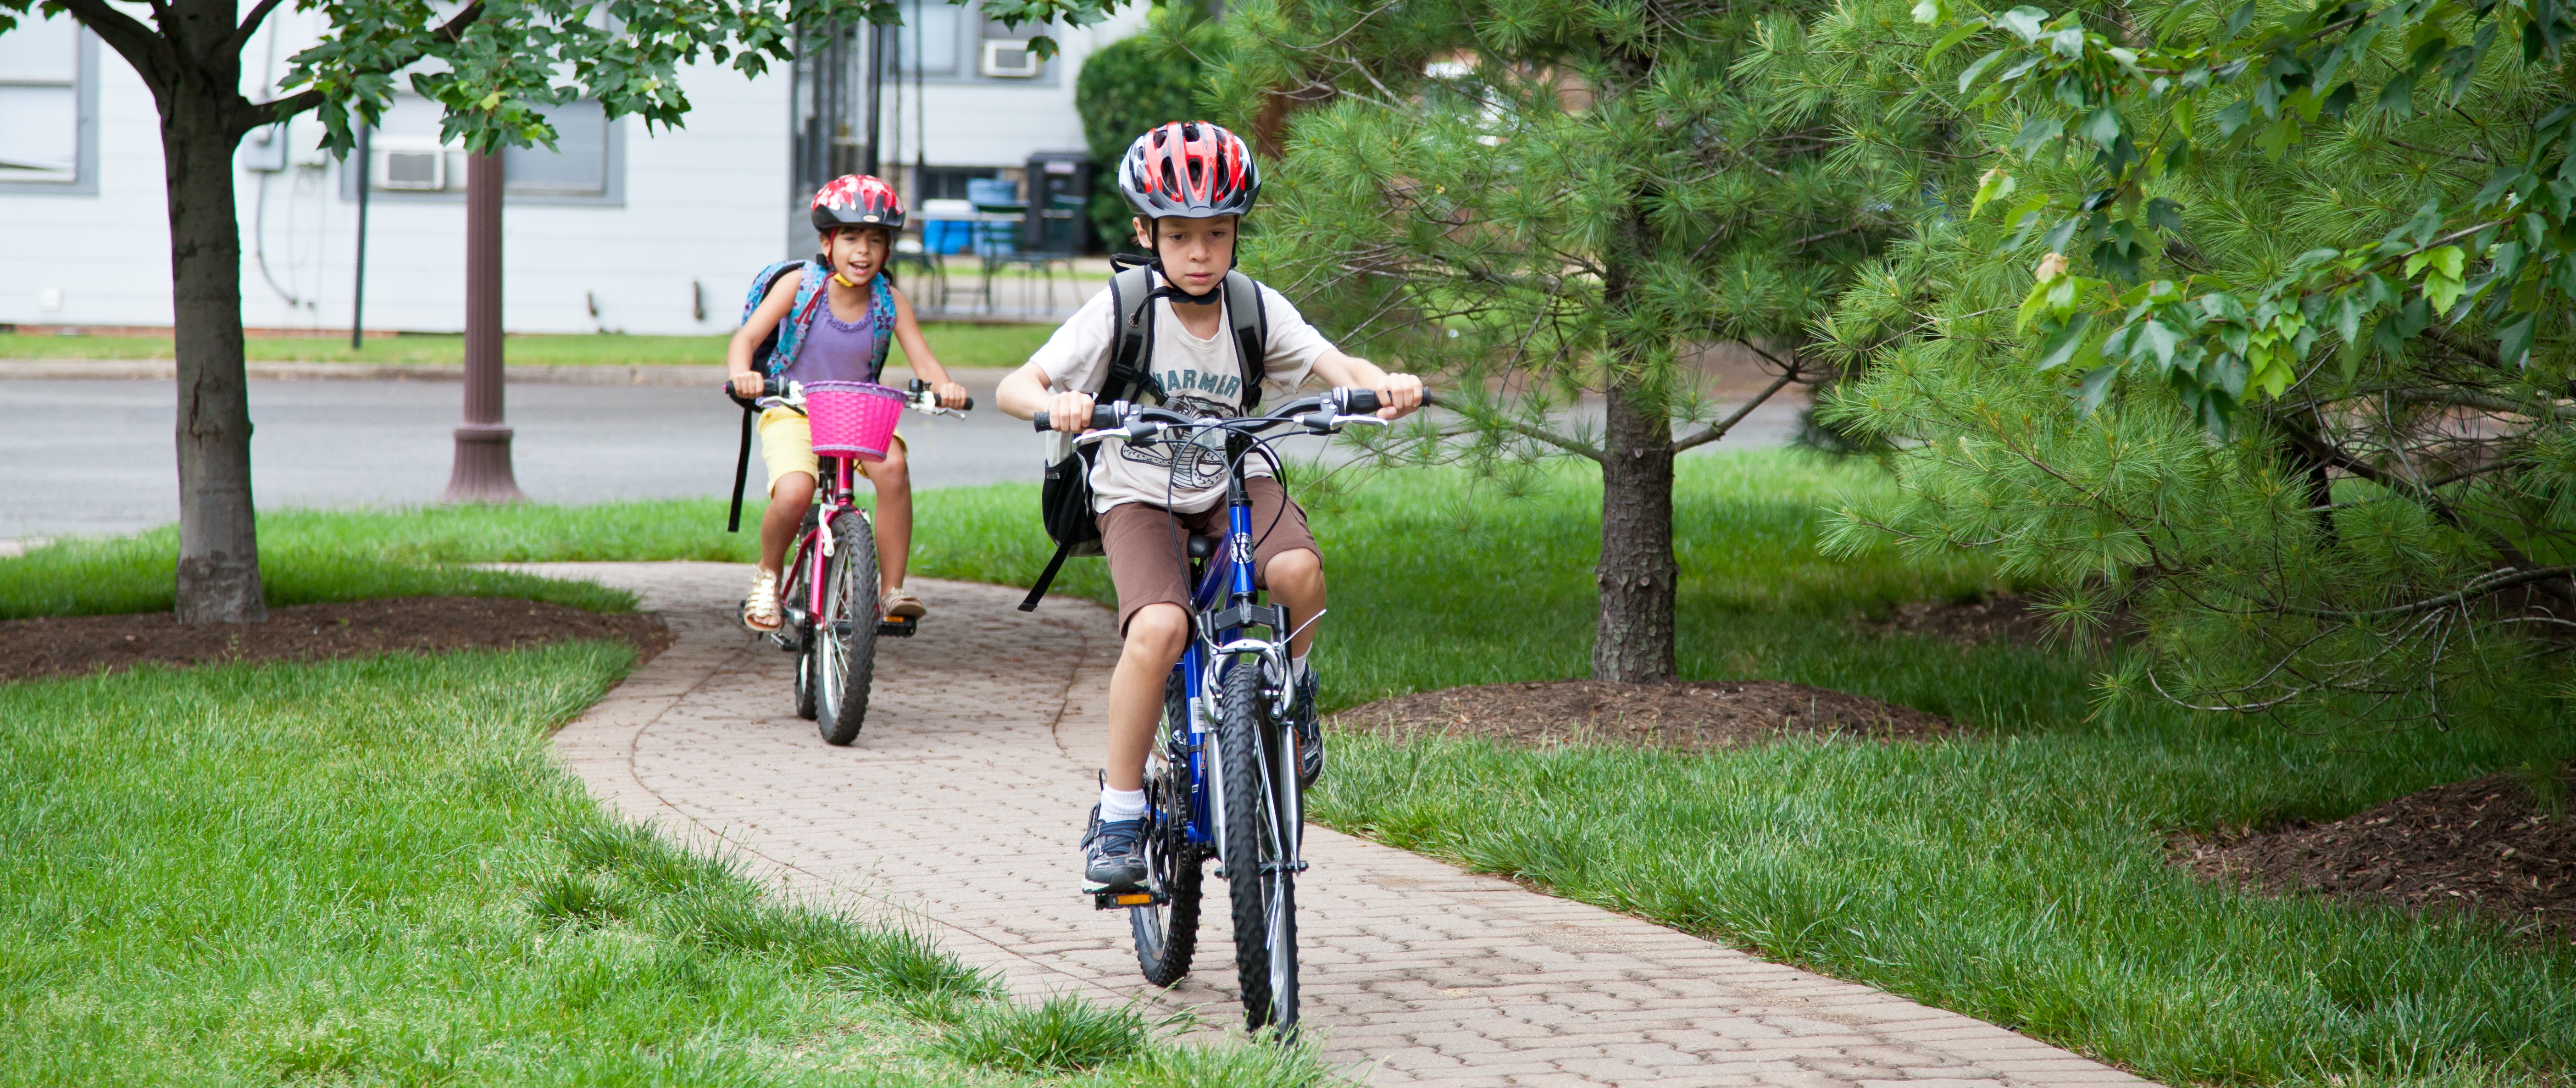 Где кататься детям до 14 лет. Дети катаются на велосипеде. Ребенок на велосипеде на дороге. Юный велосипедист. Дети на велосипеде в городе.